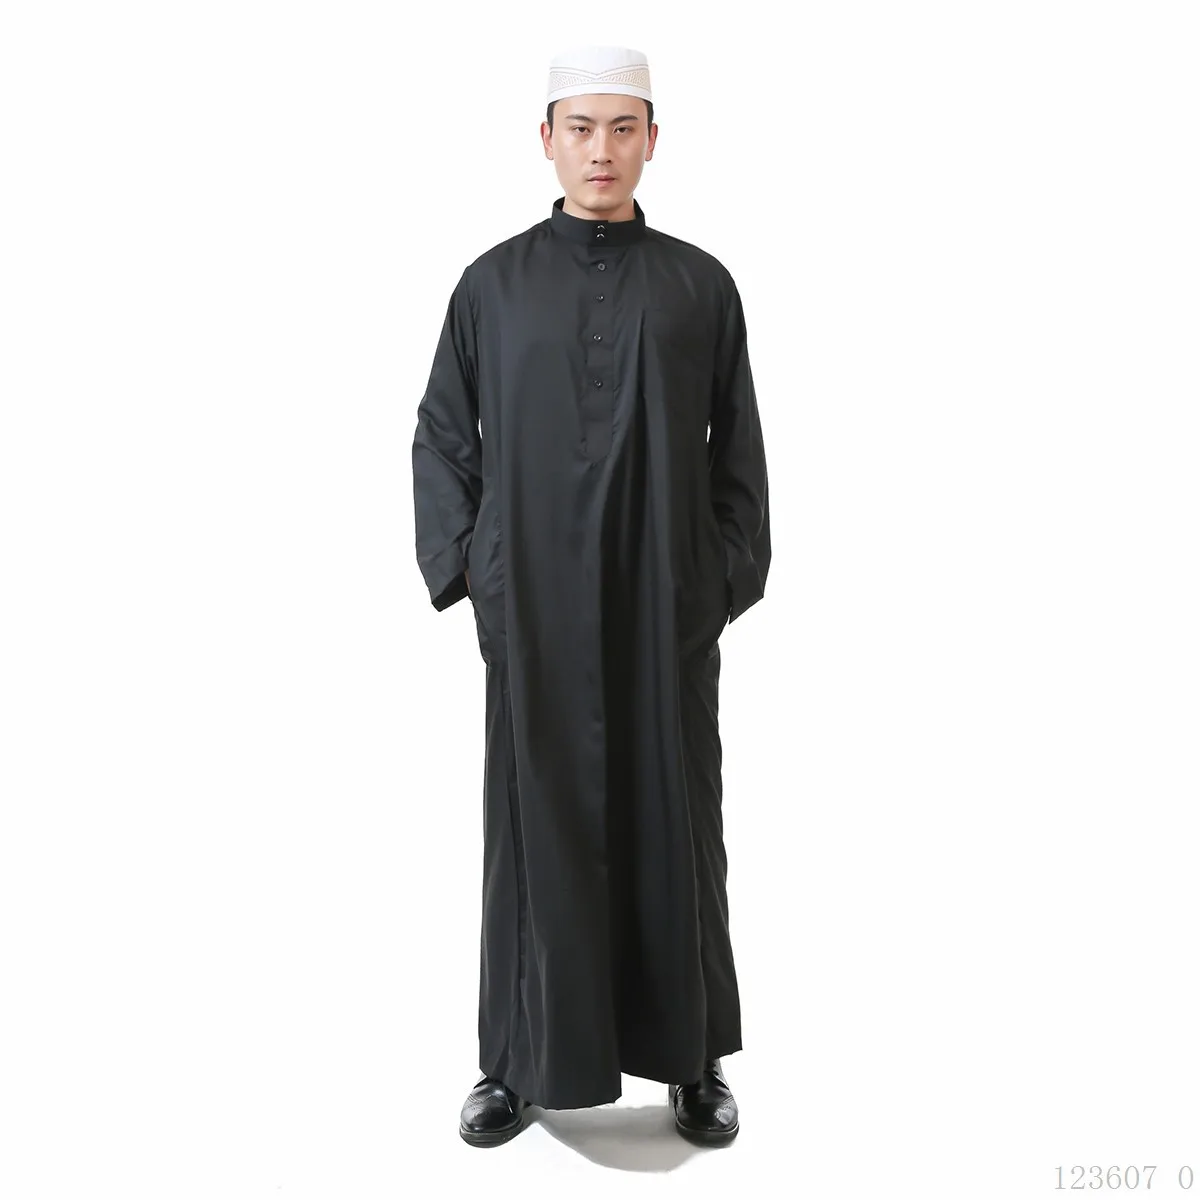 Белый исламский, Арабский Дизайн мужской одежды jubba tobe Daffah мужские мусульманские традиционные костюмы элегантное женское вечернее платье Турецкий кафтан - Цвет: Black